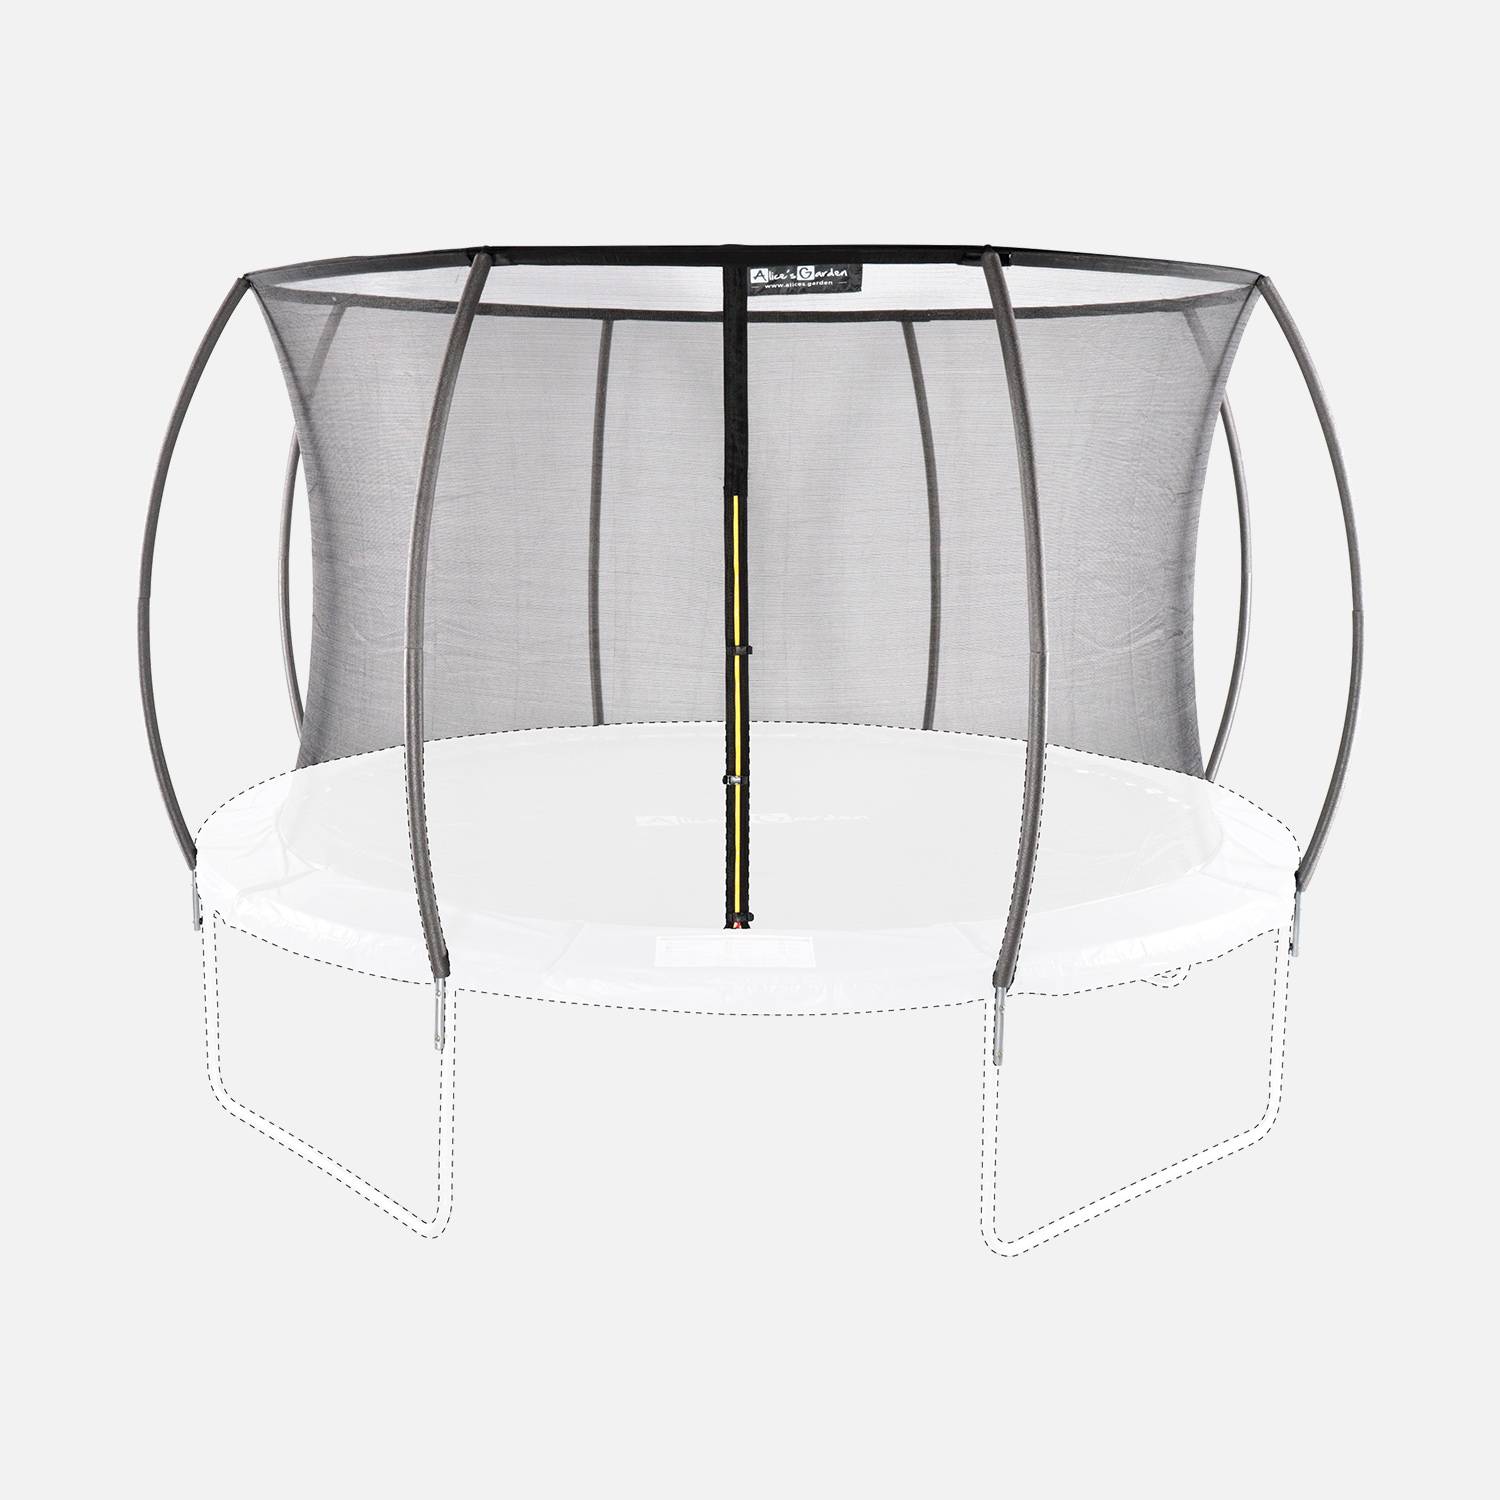 Kit de remplacement de filet de protection de trampoline, ANTARES INNER, pour trampoline Saturne Ø370cm Photo2